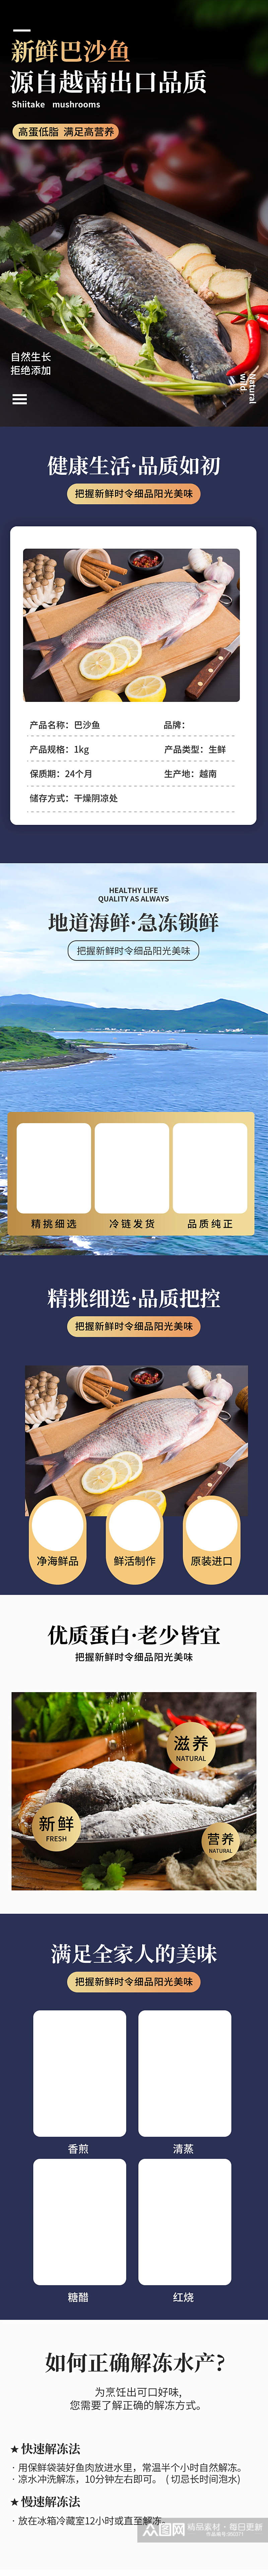 巴沙鱼冷冻食品生鲜美食详情页素材